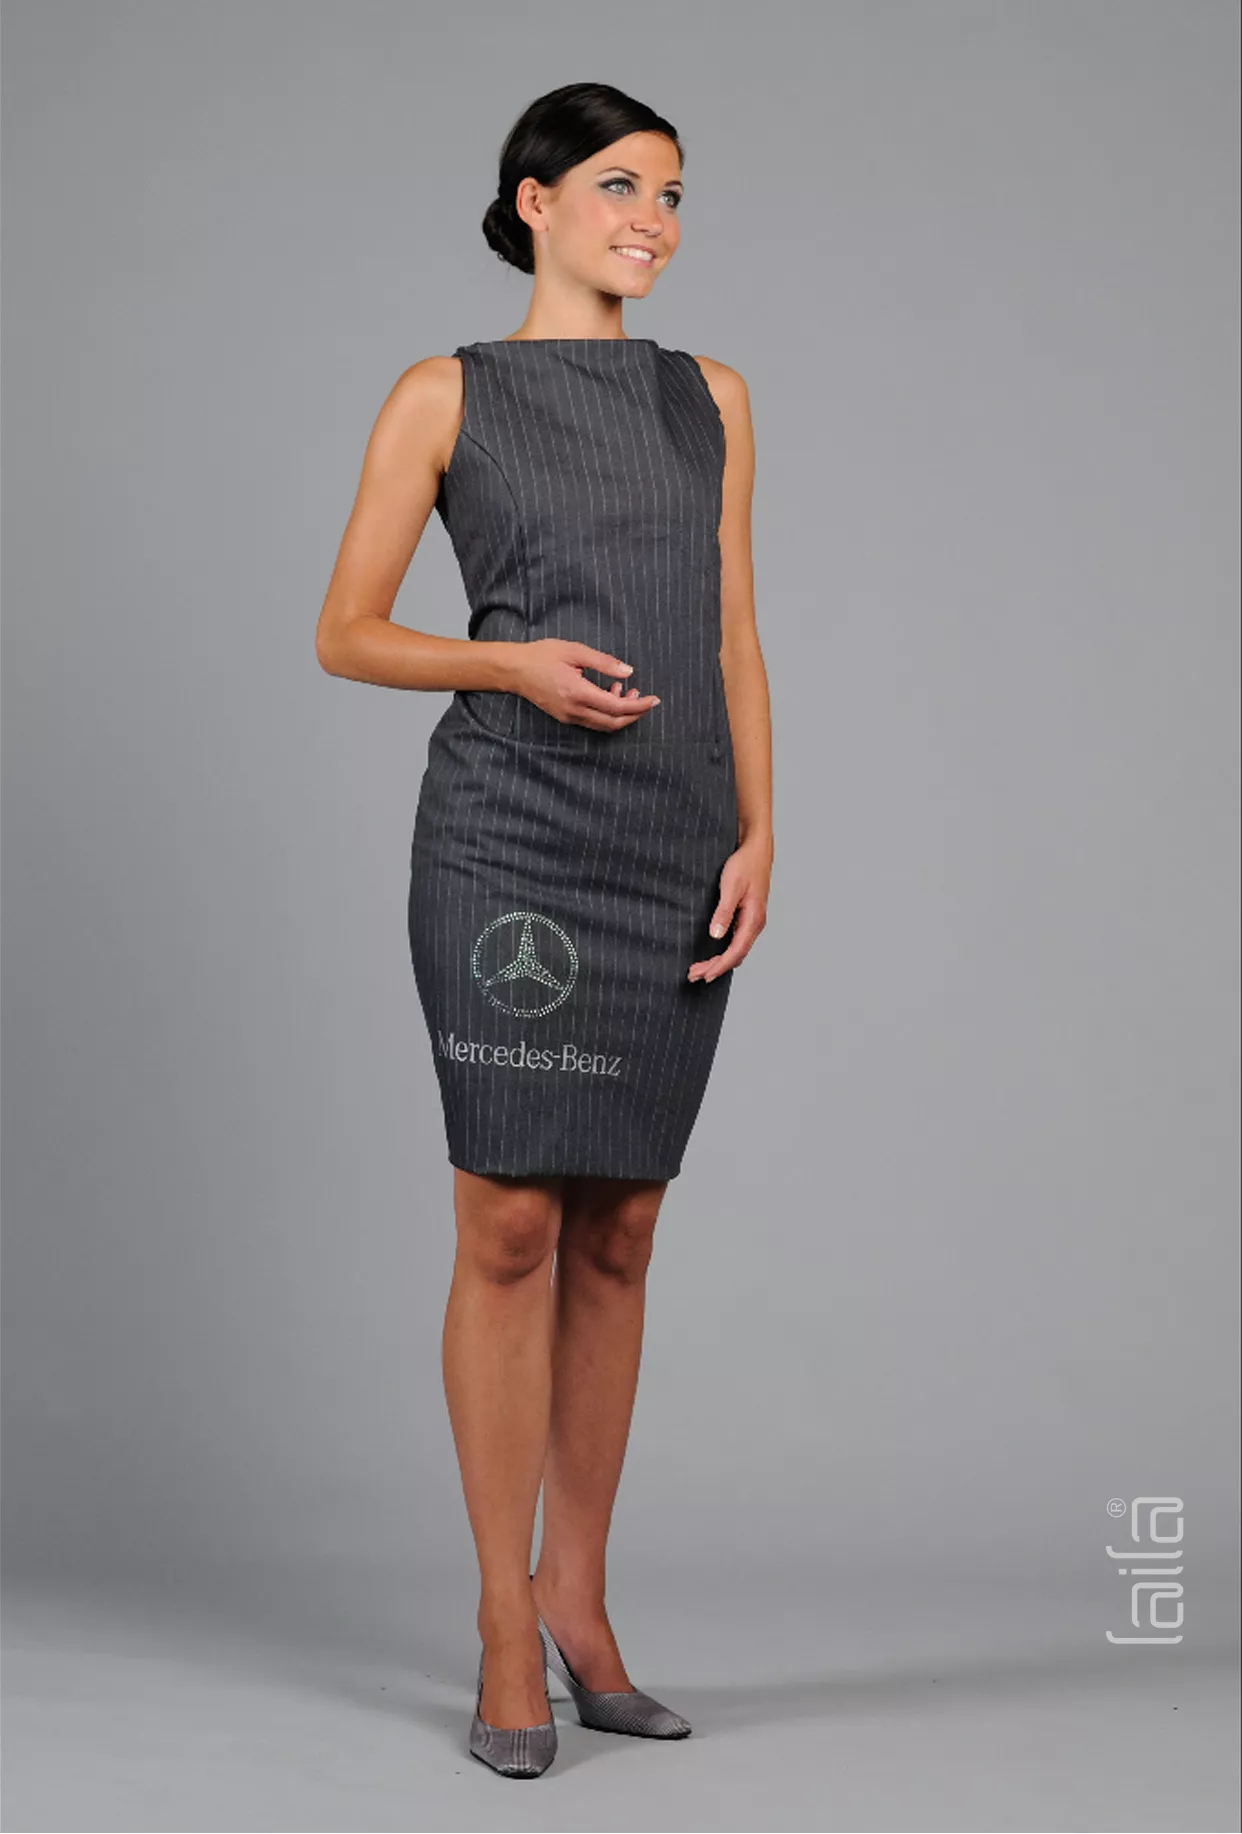 LAiLA Kleid für Mercedes Benz